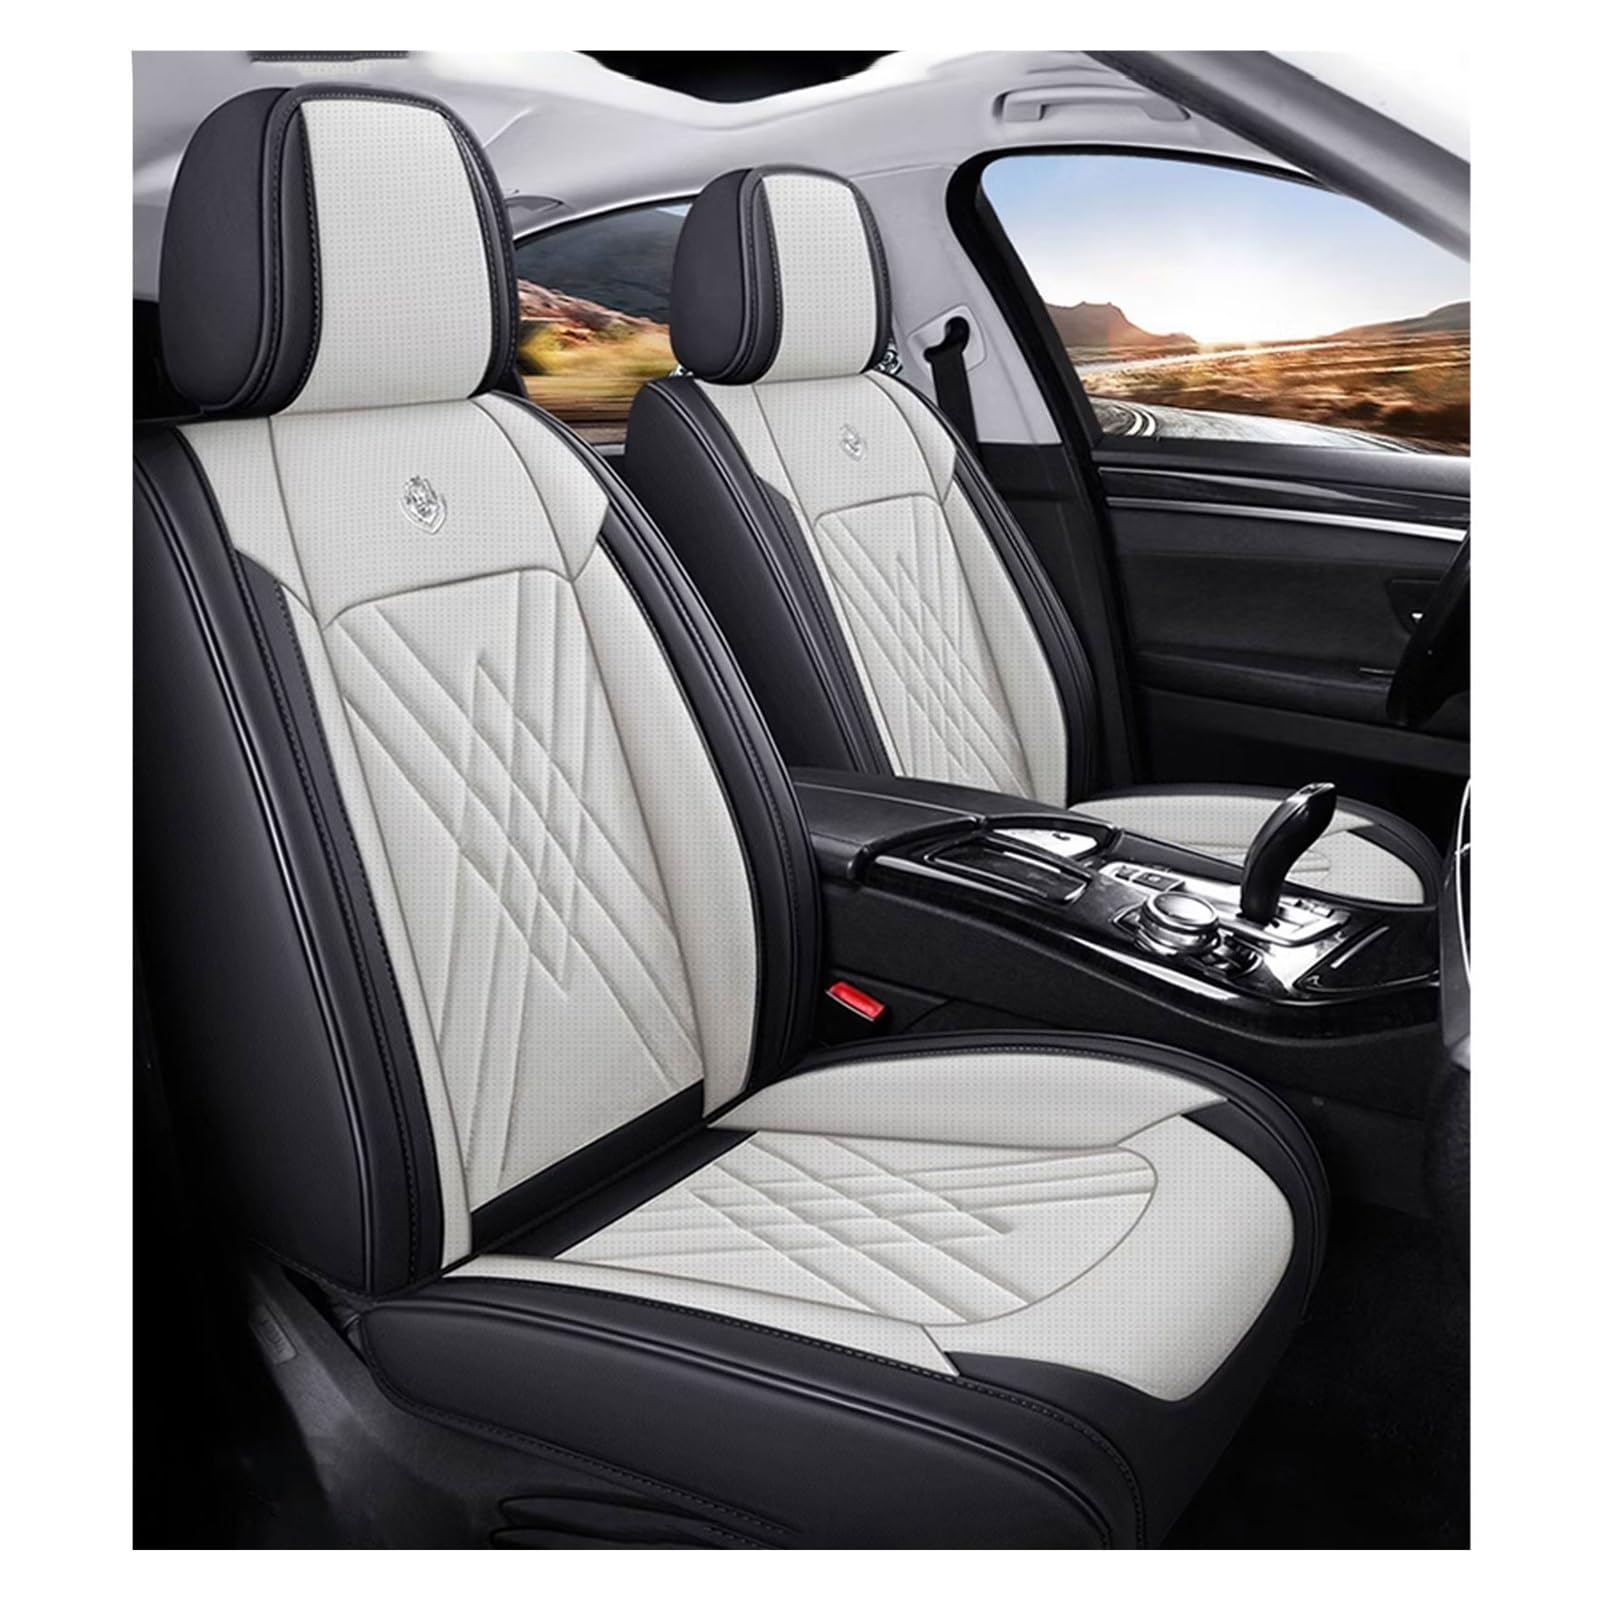 WEBOL Universal-Sitzbezug Komplett-Set Für Audi A2, AutositzbezüGe Set Leder, 5-Sitze Universal-SitzbezüGe Auto Komplettset(C) von WEBOL